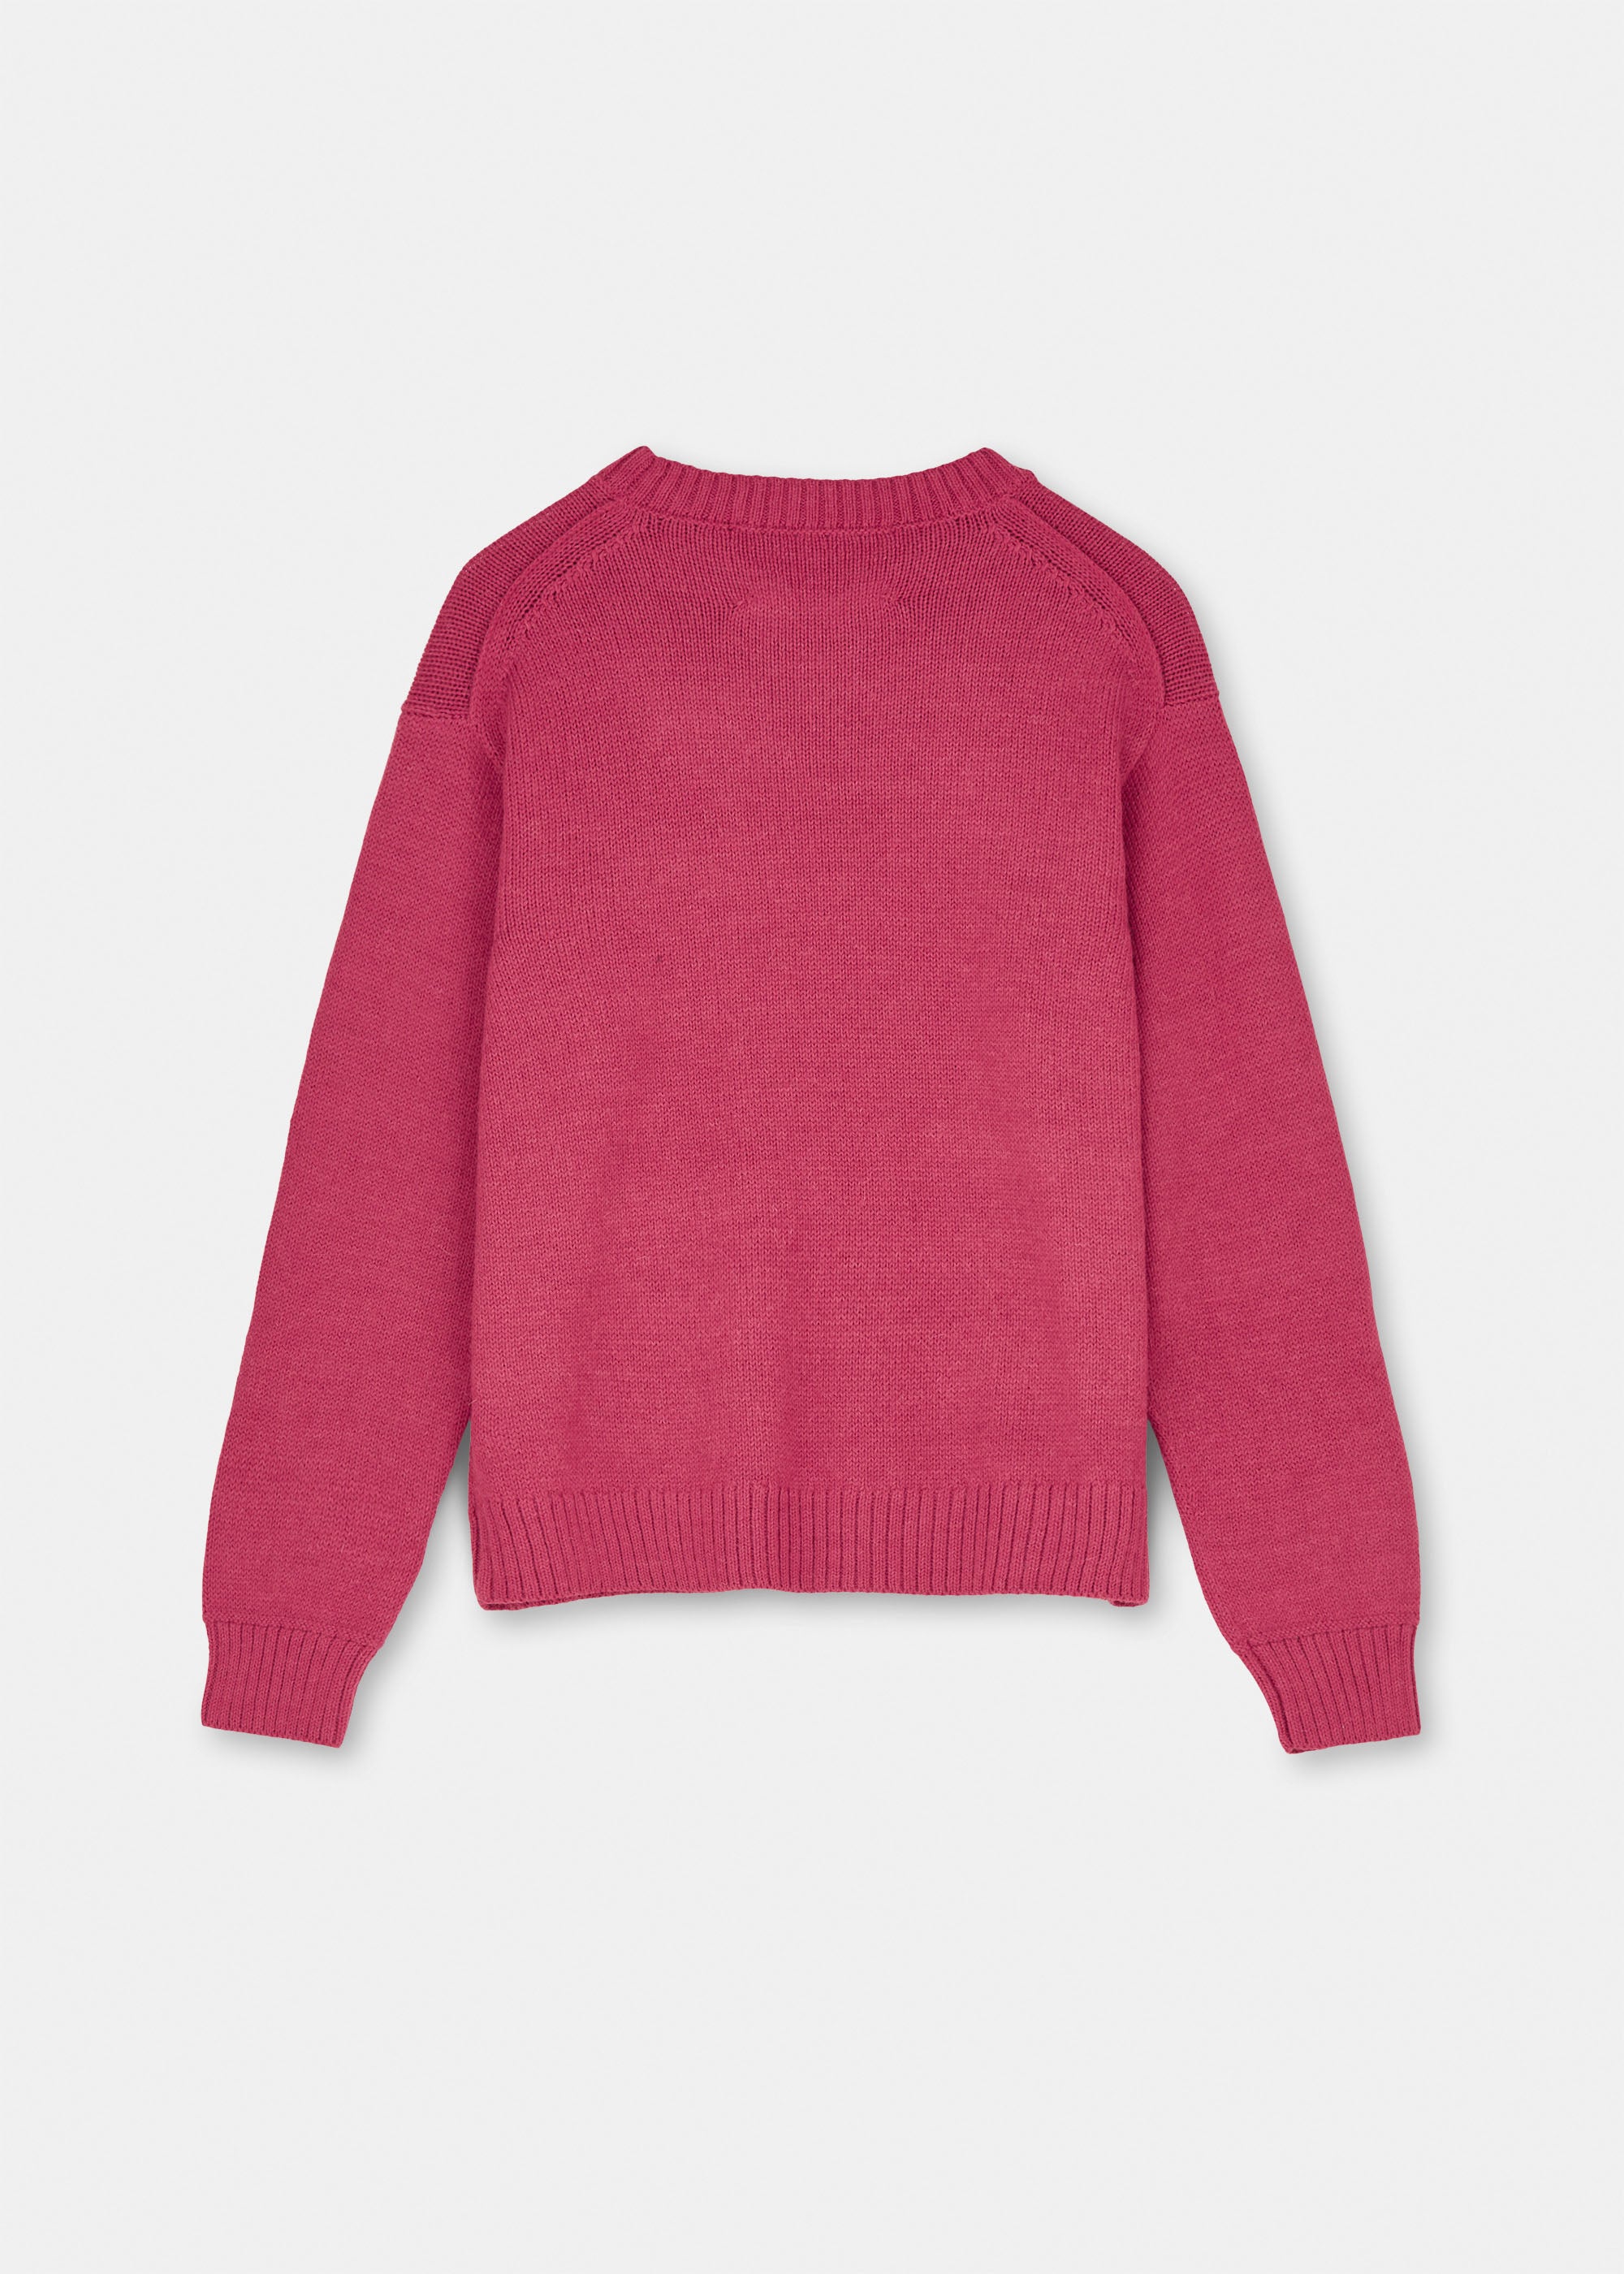 Highland saga wool sweater | Scarlet